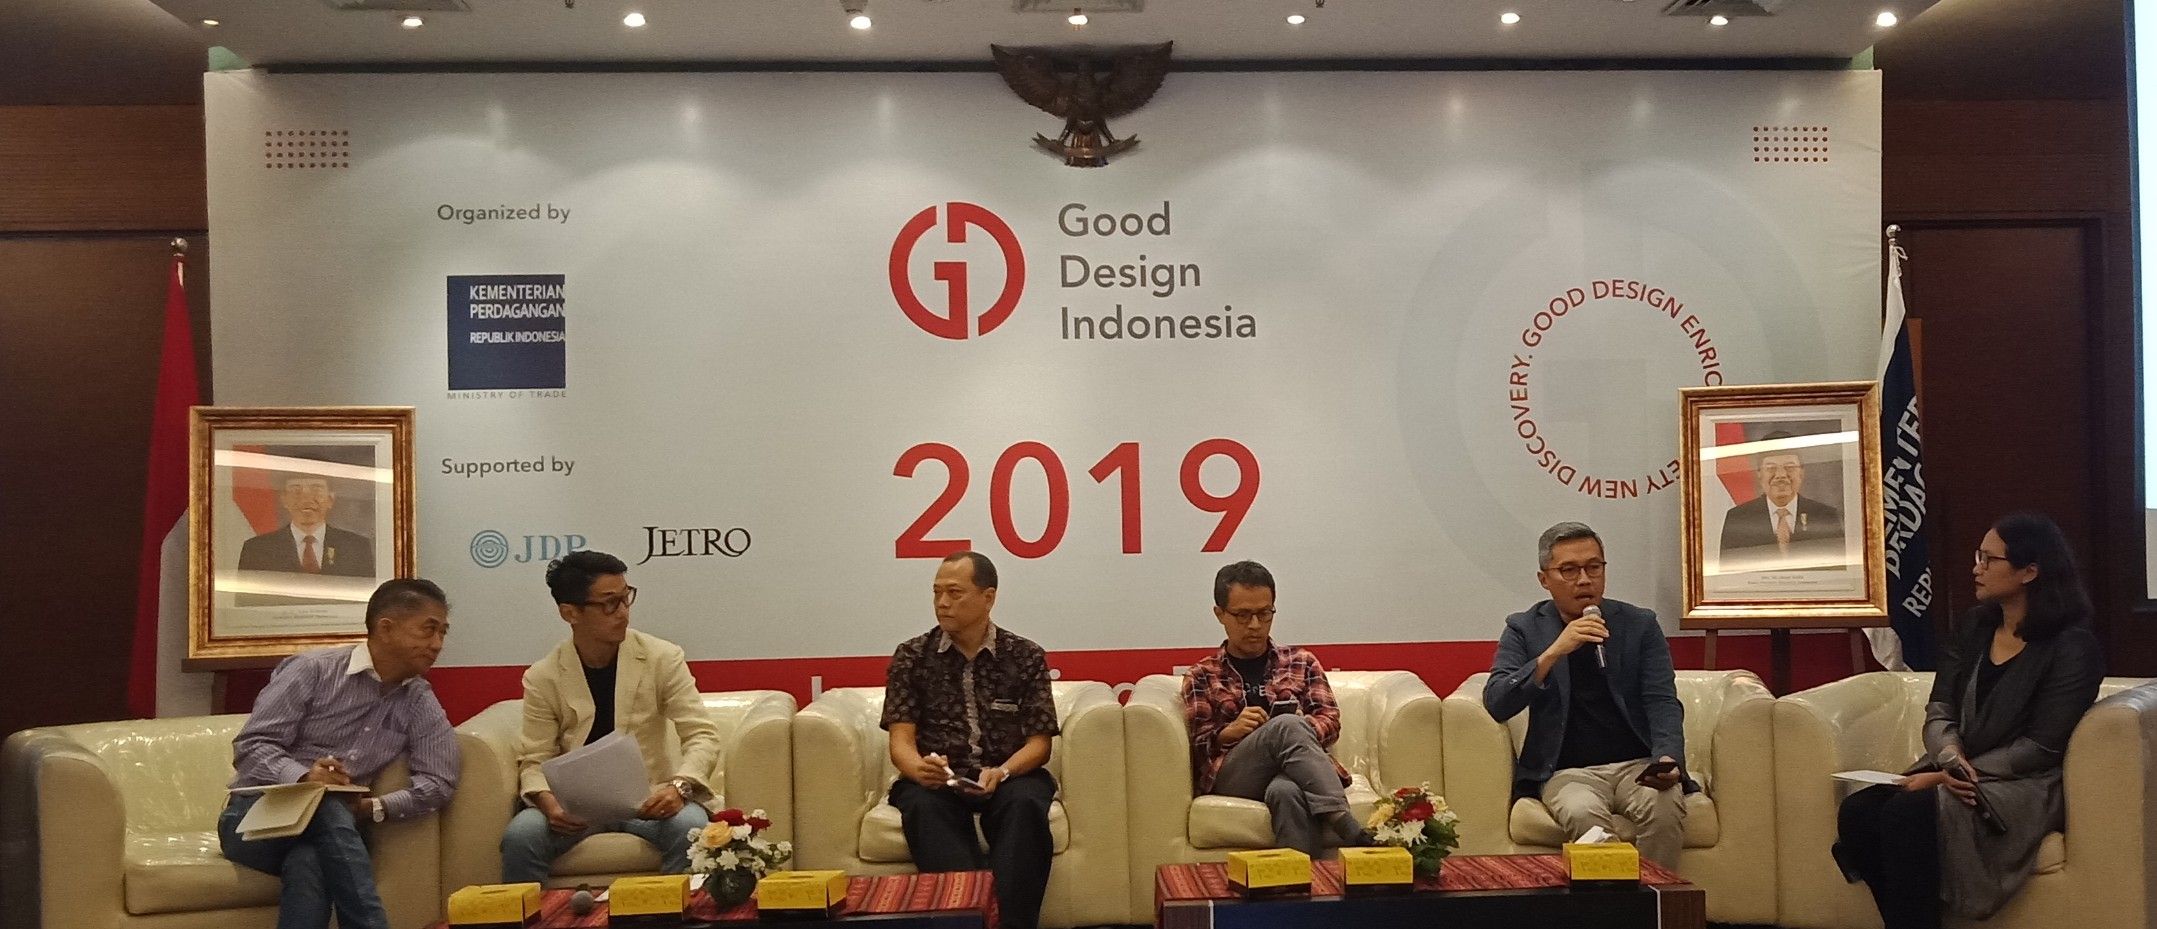 Good Design Indonesia 2019 Tingkatkan Daya Saing Produk Indonesia Di